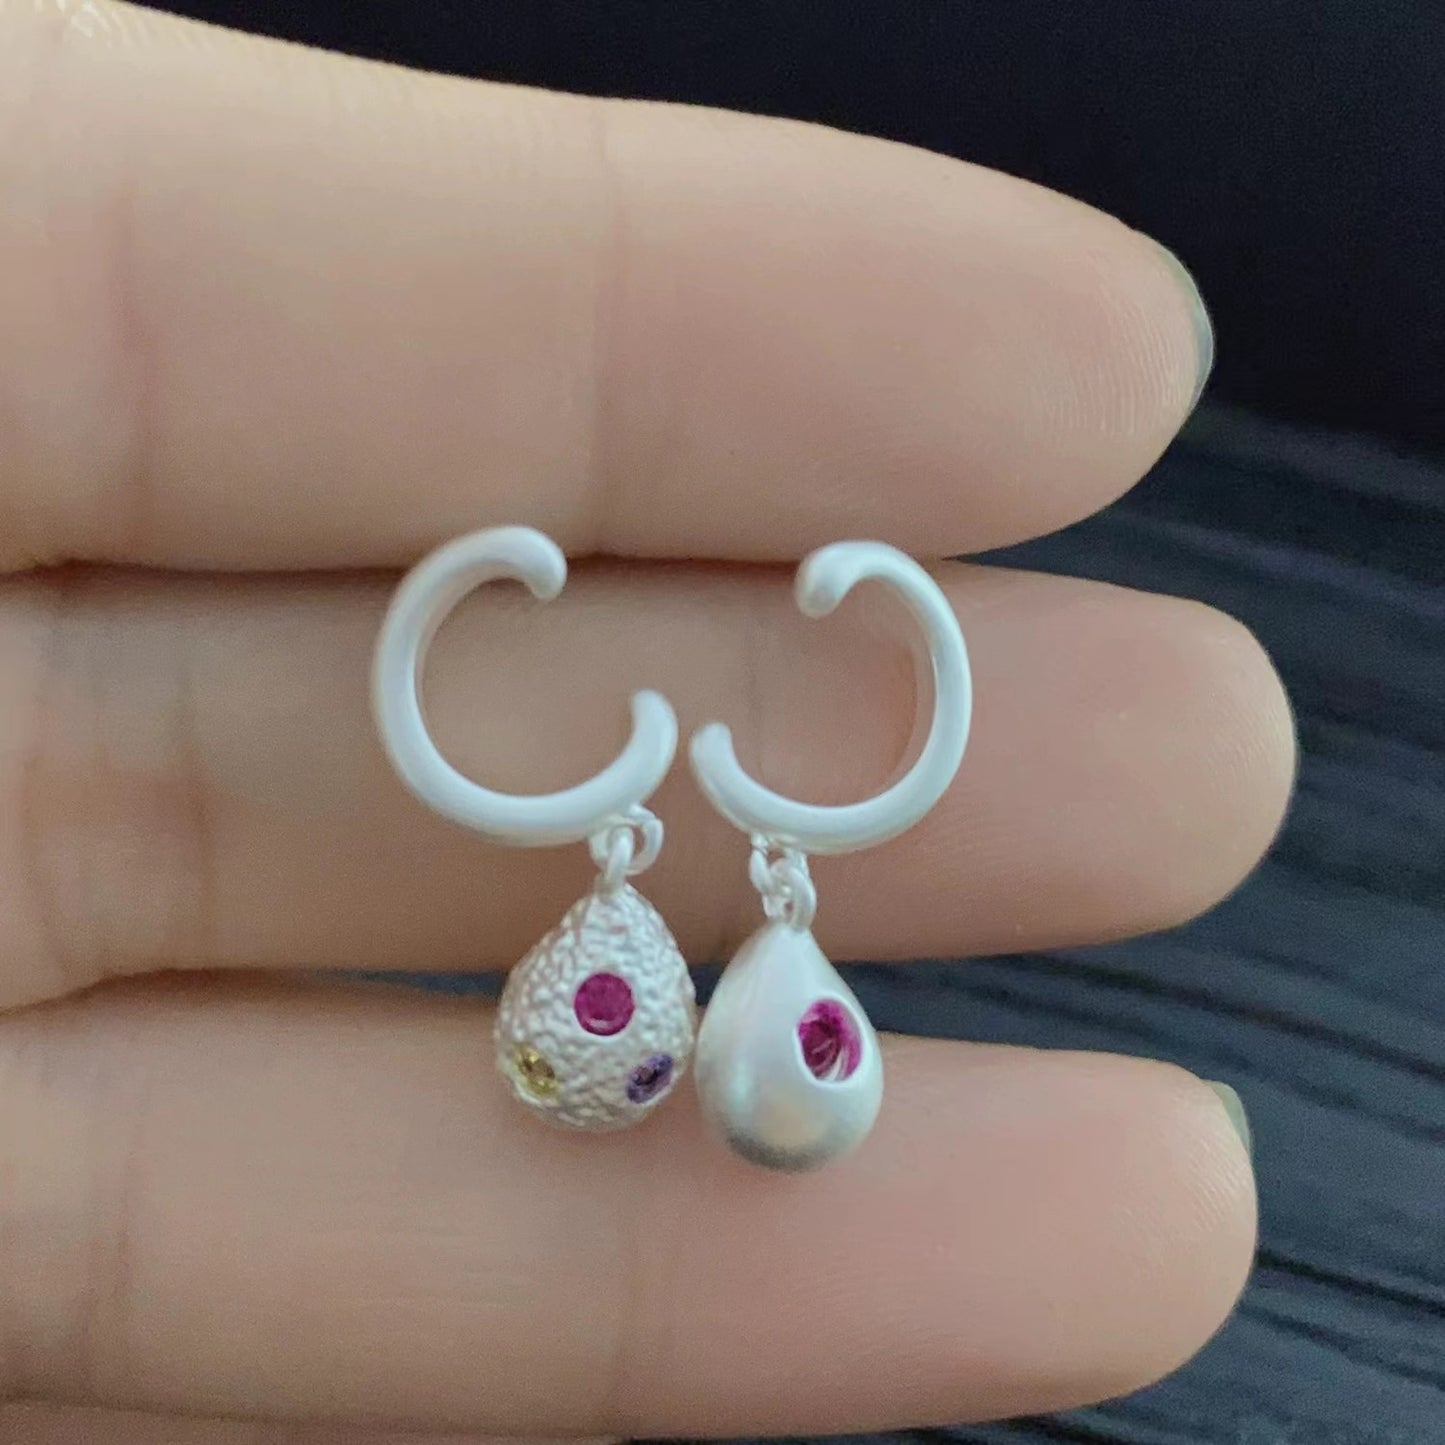 Silver pin colorful rhinestone drop earrings vintage light luxury niche earrings